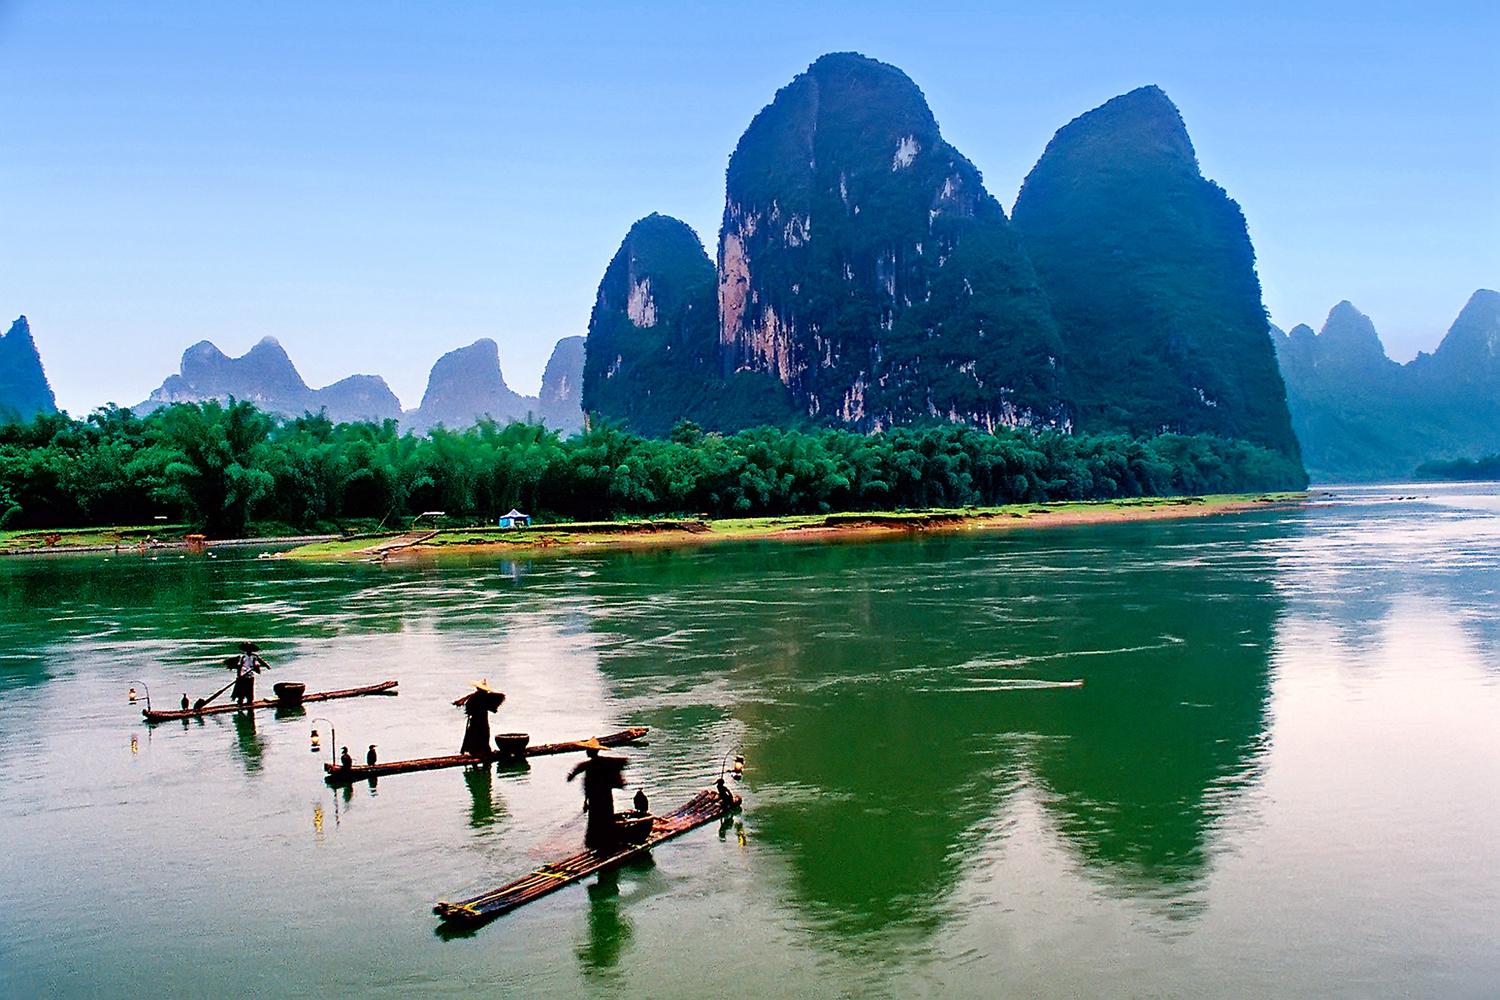 这组照片完美诠释了桂林的山山水水!